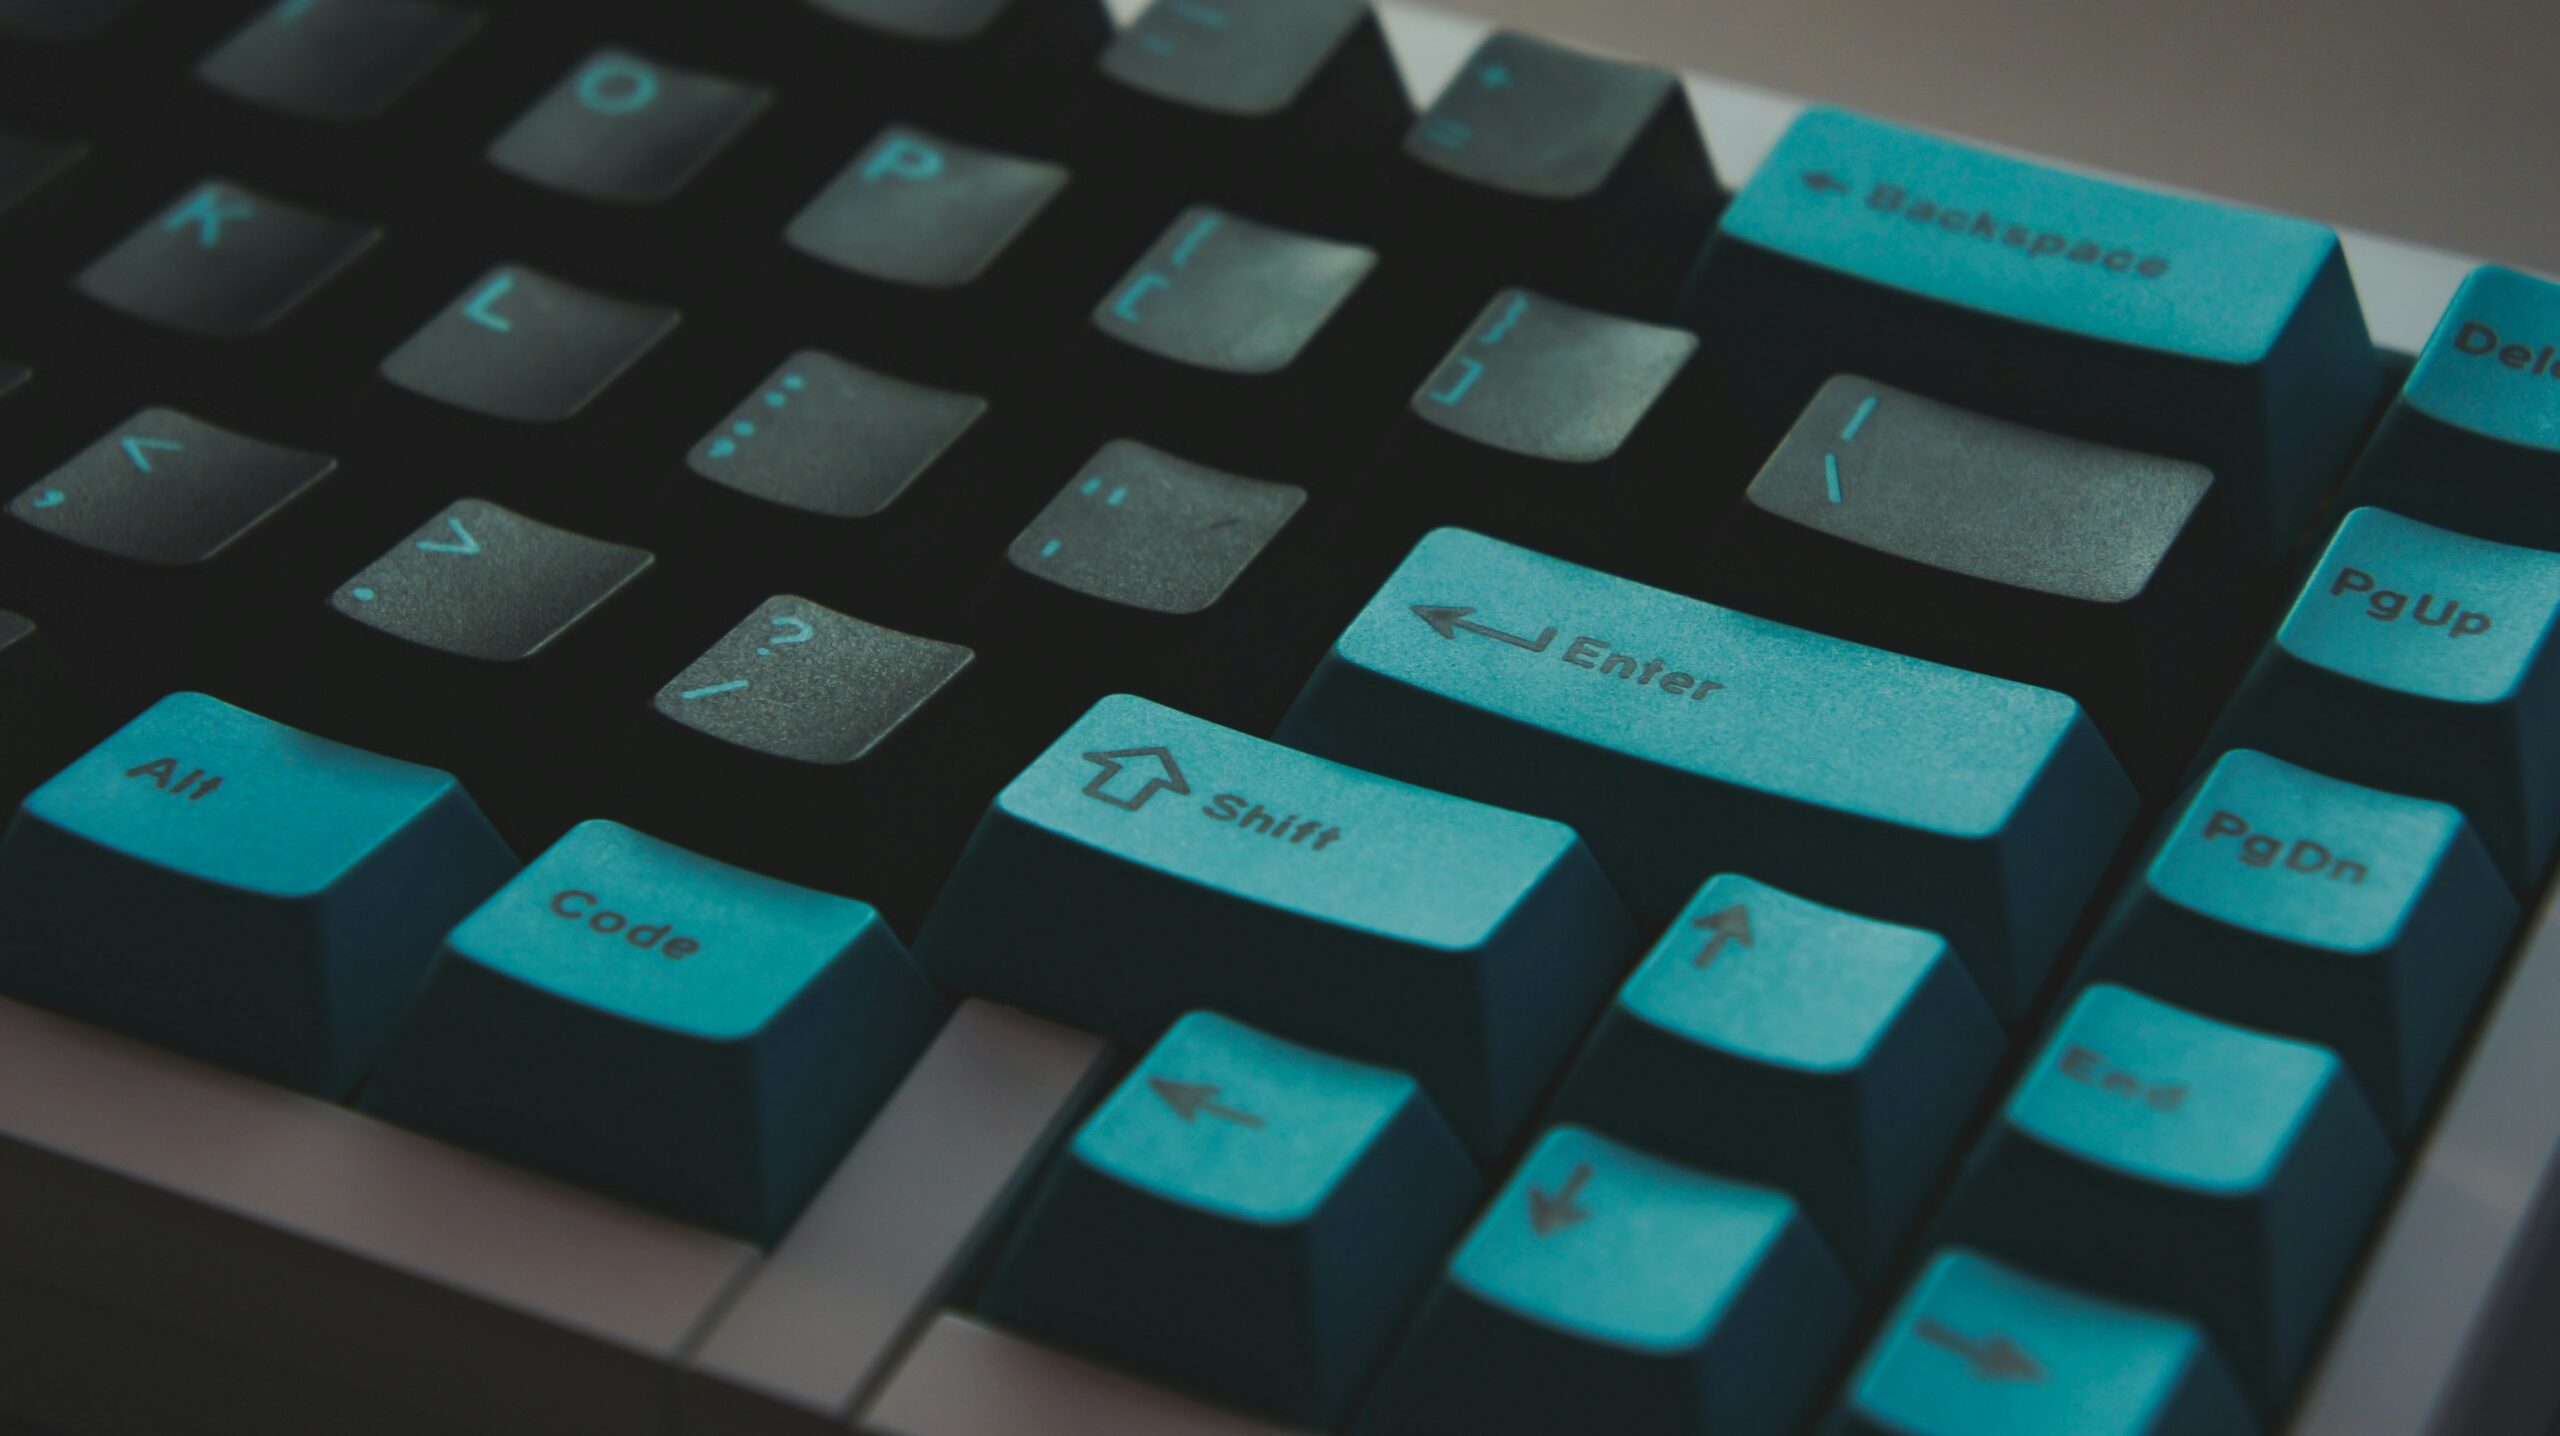 Image of blue keyboard - Destination Certification